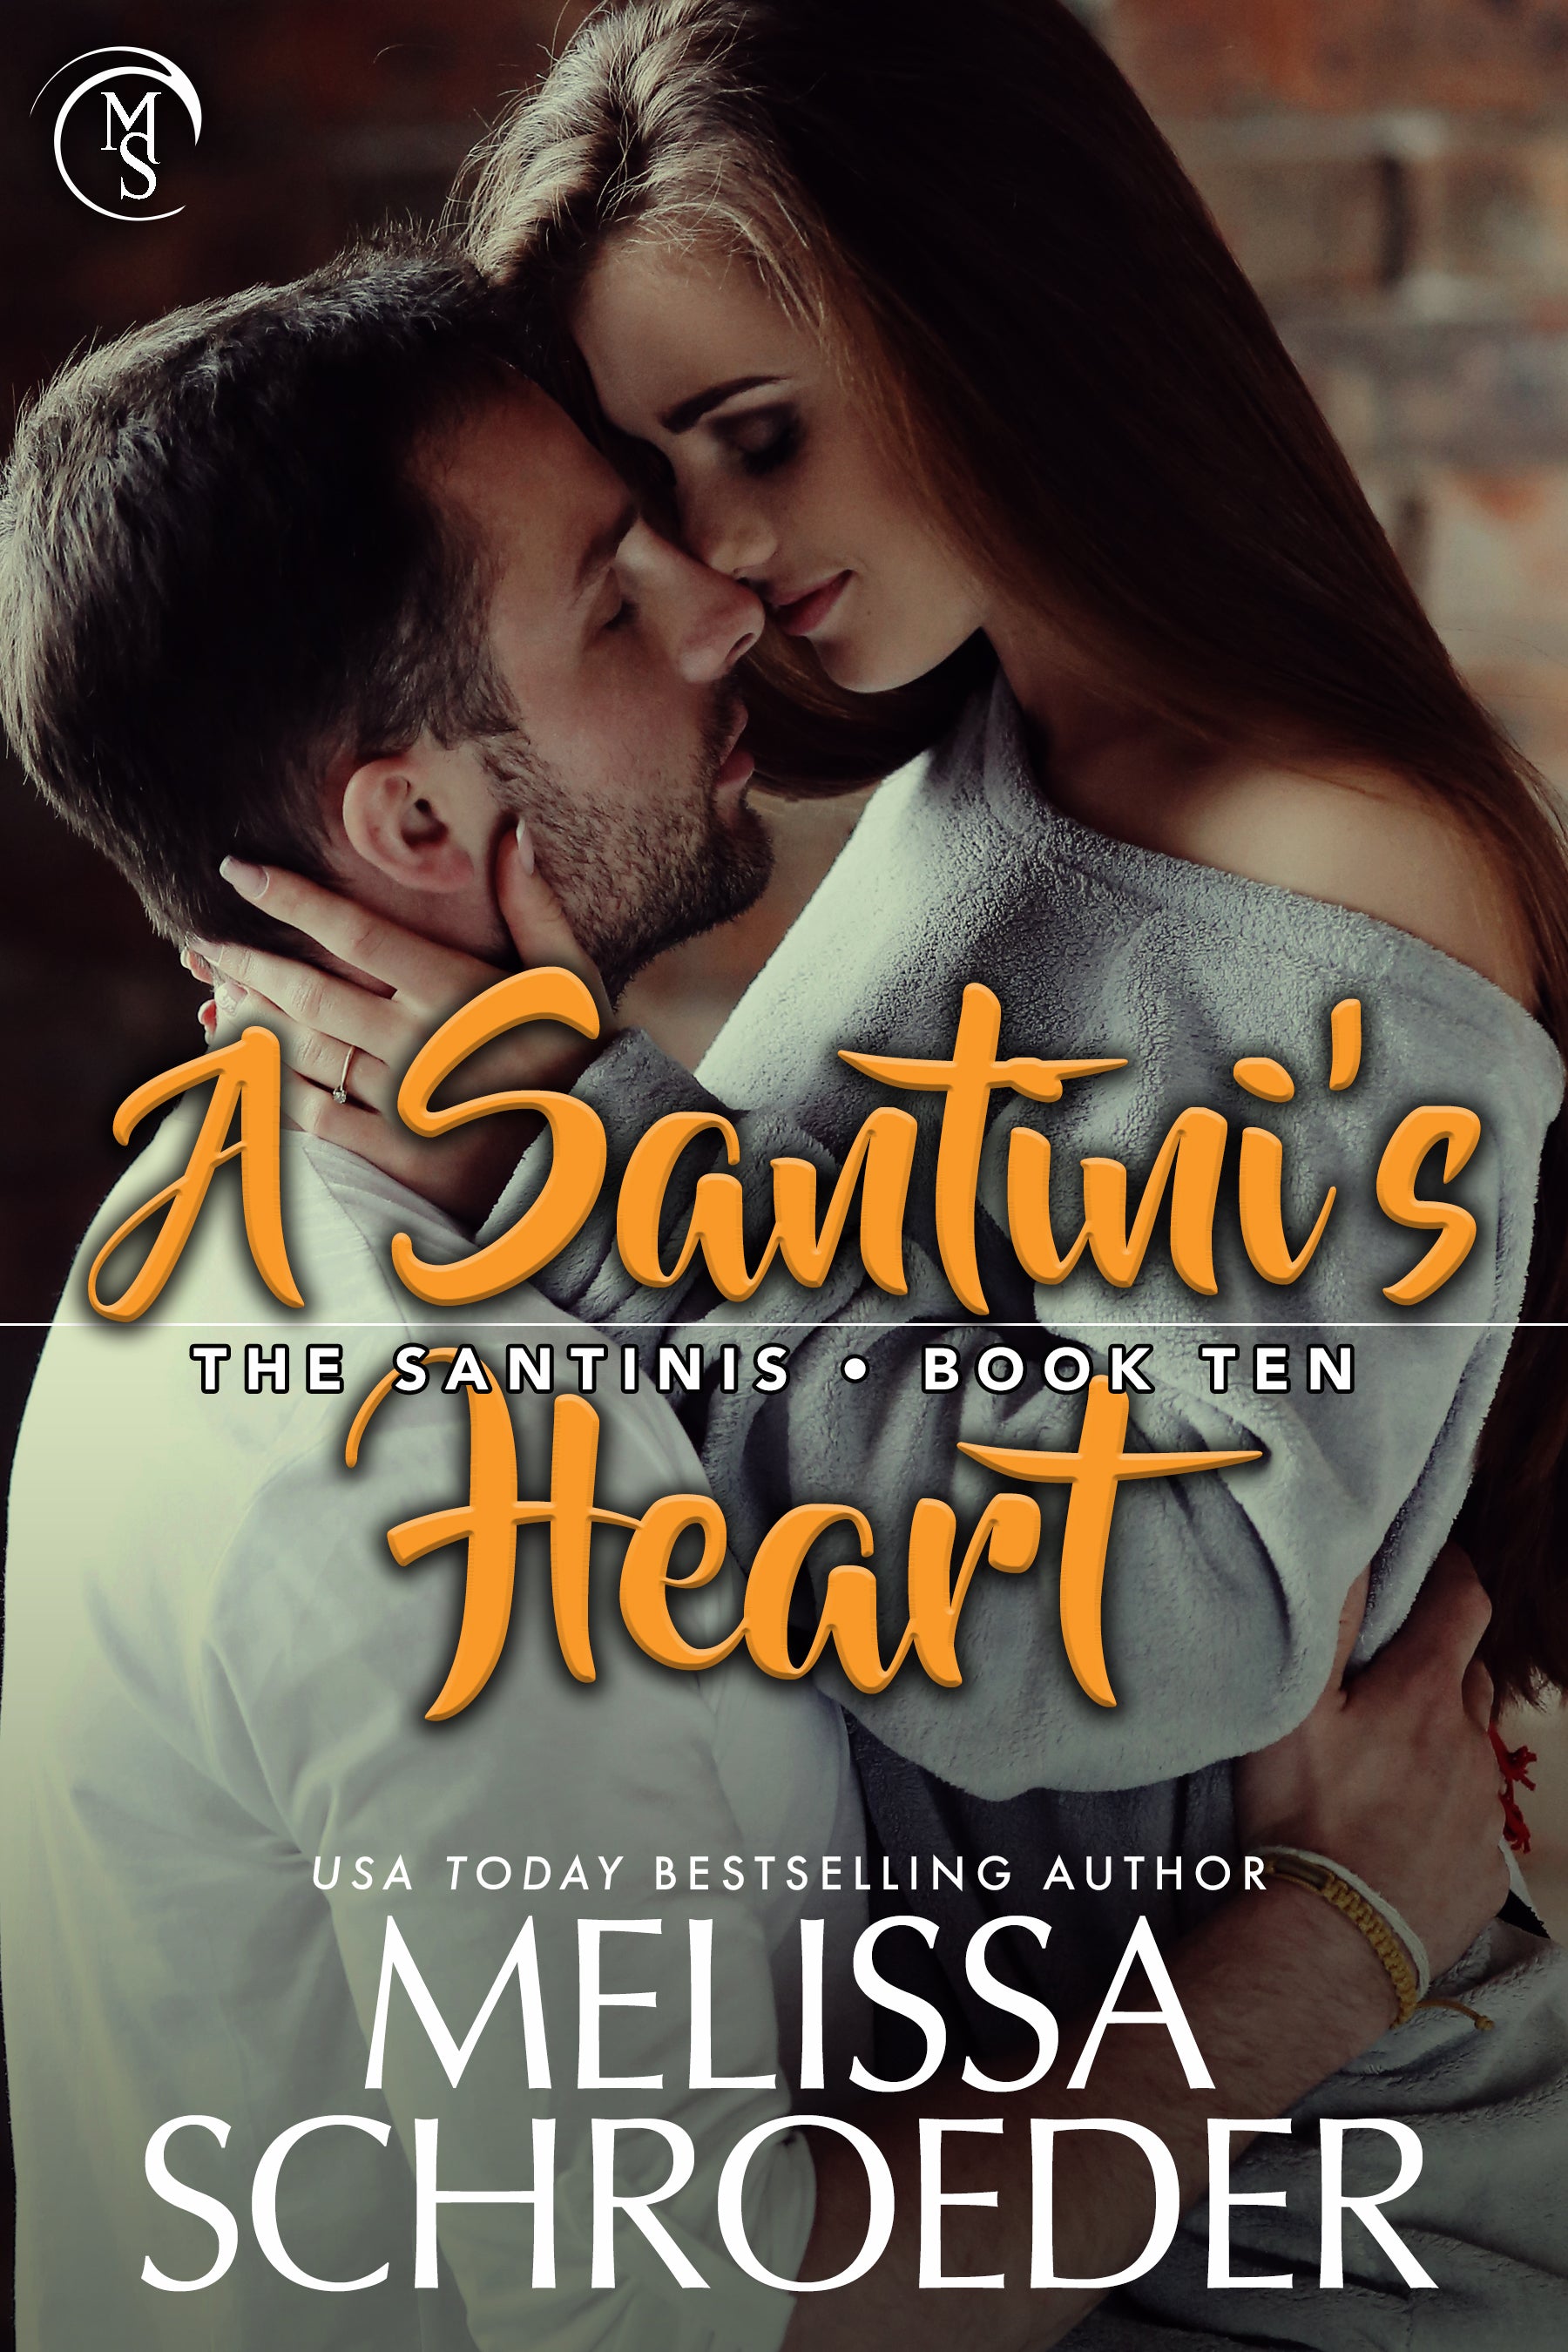 A Santini's Heart